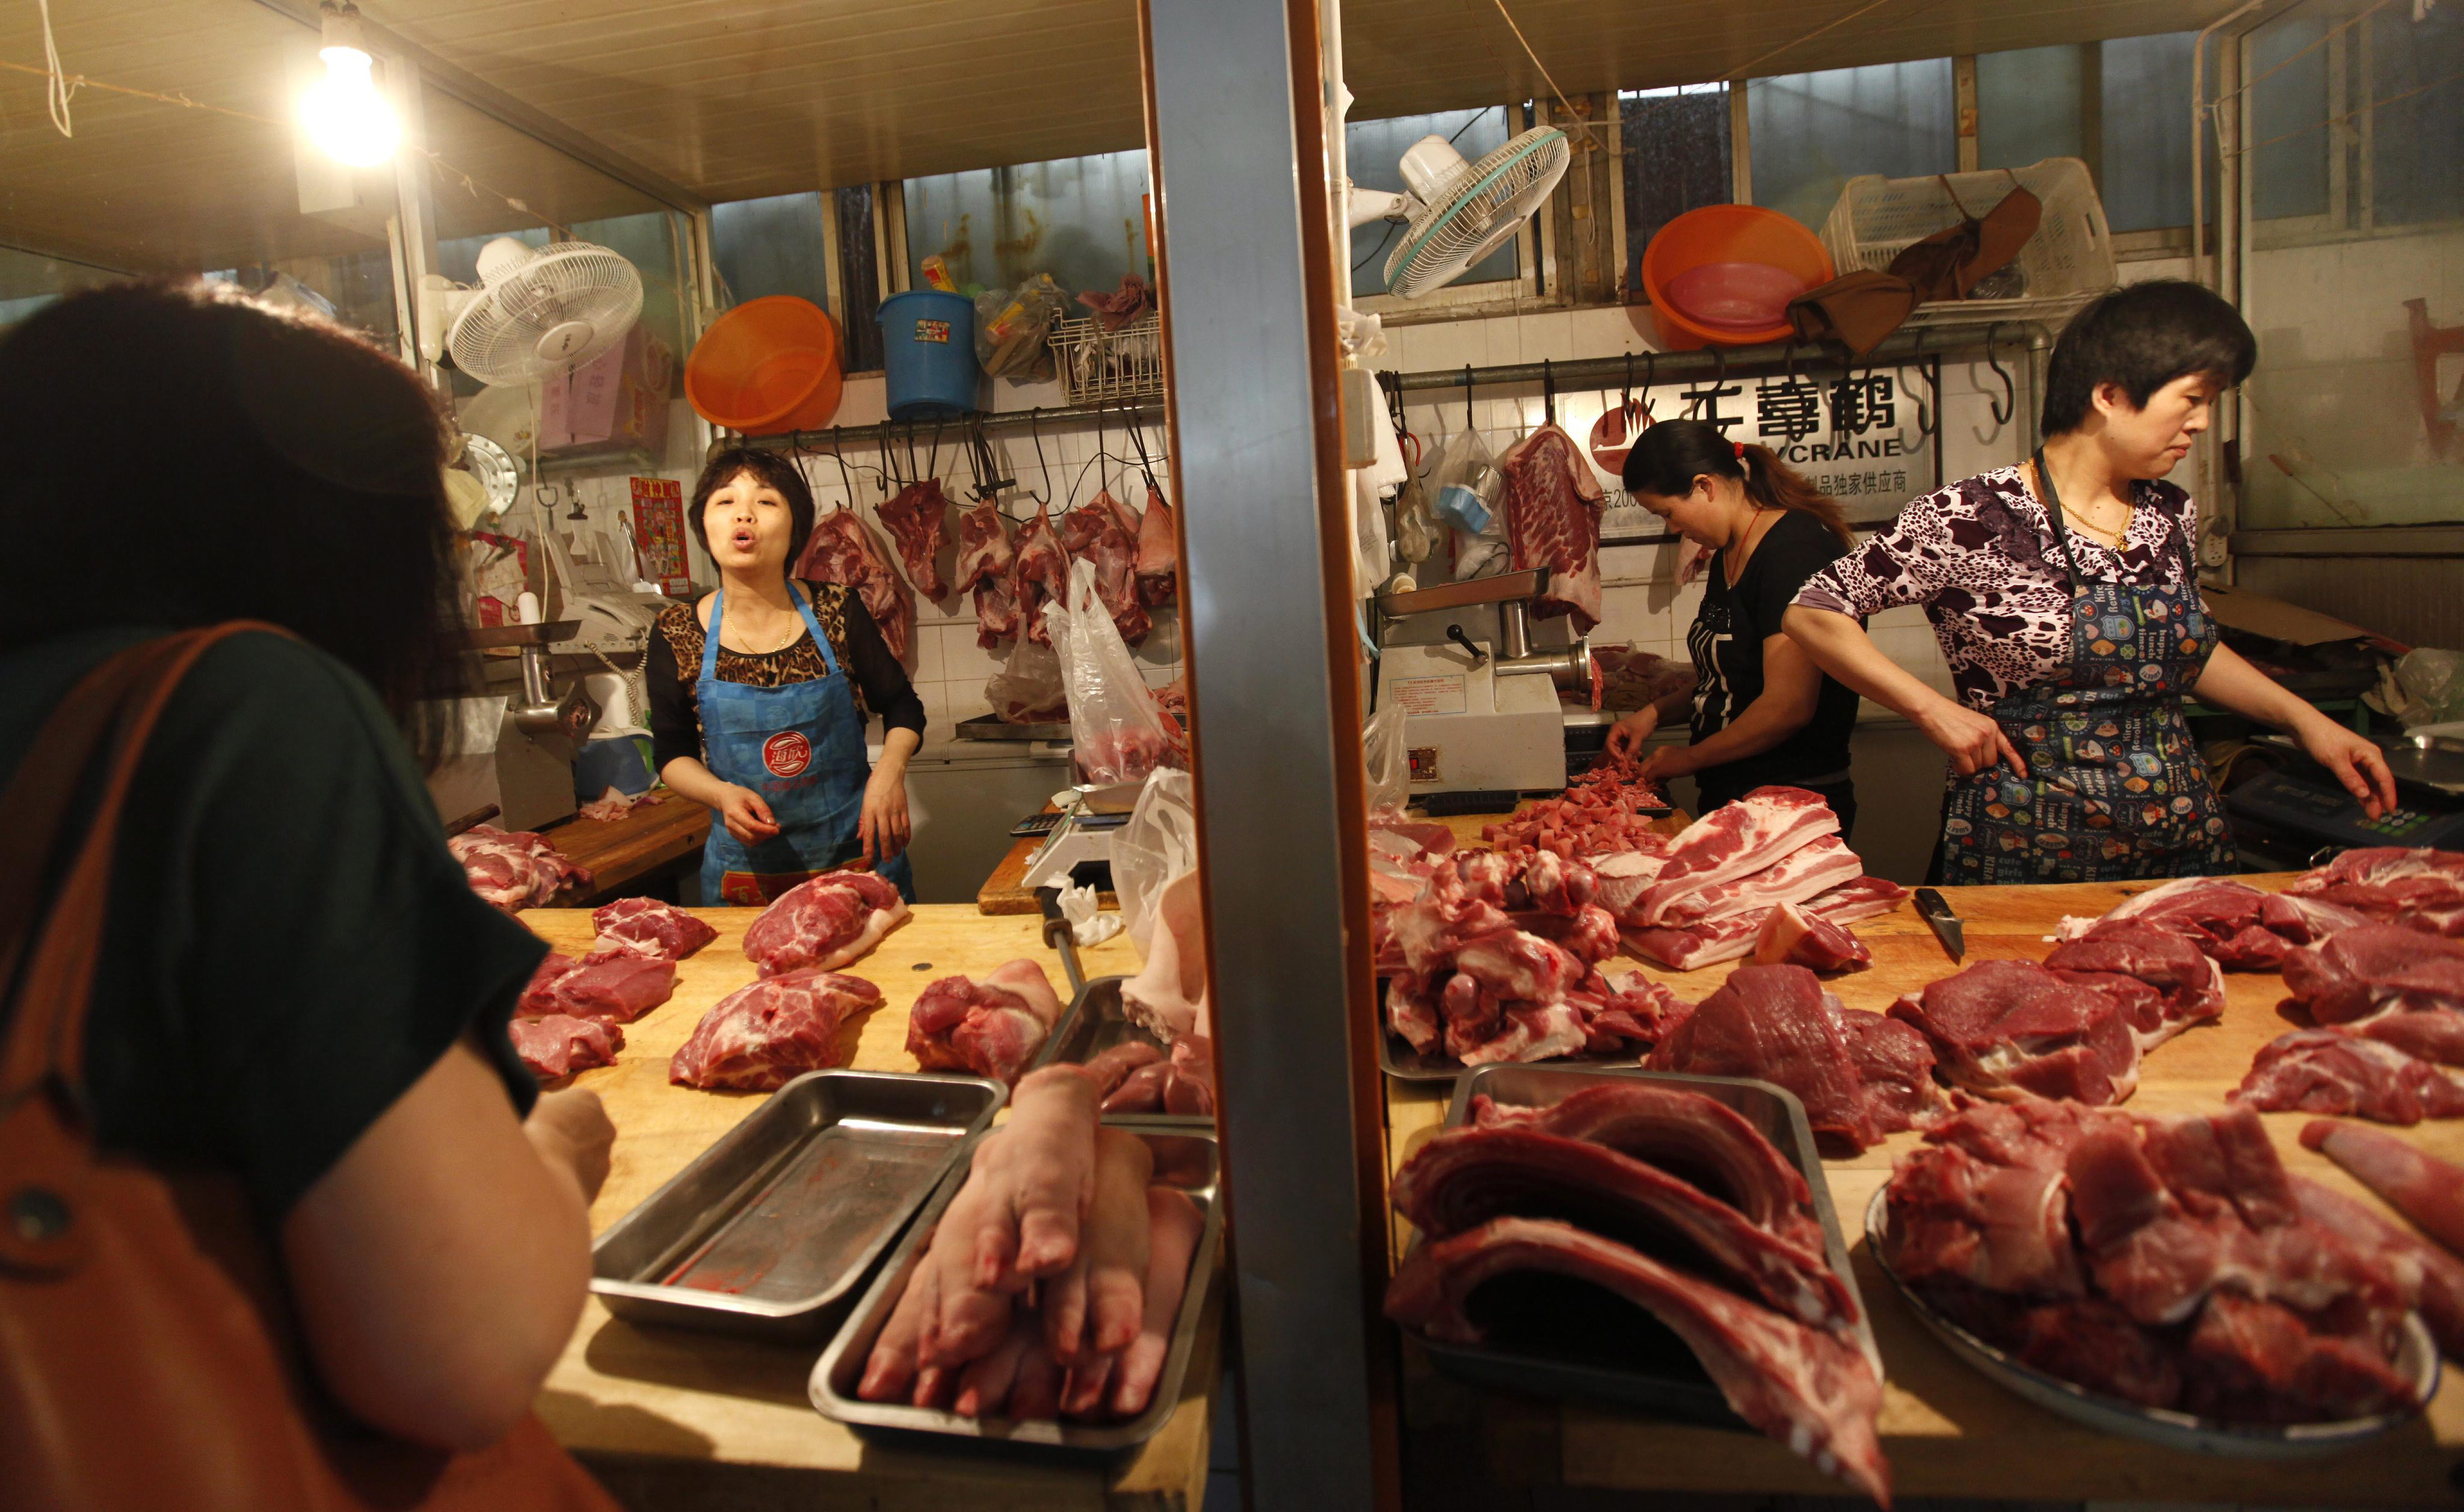 El último escándalo alimentario en China es vender carne de rata como cordero